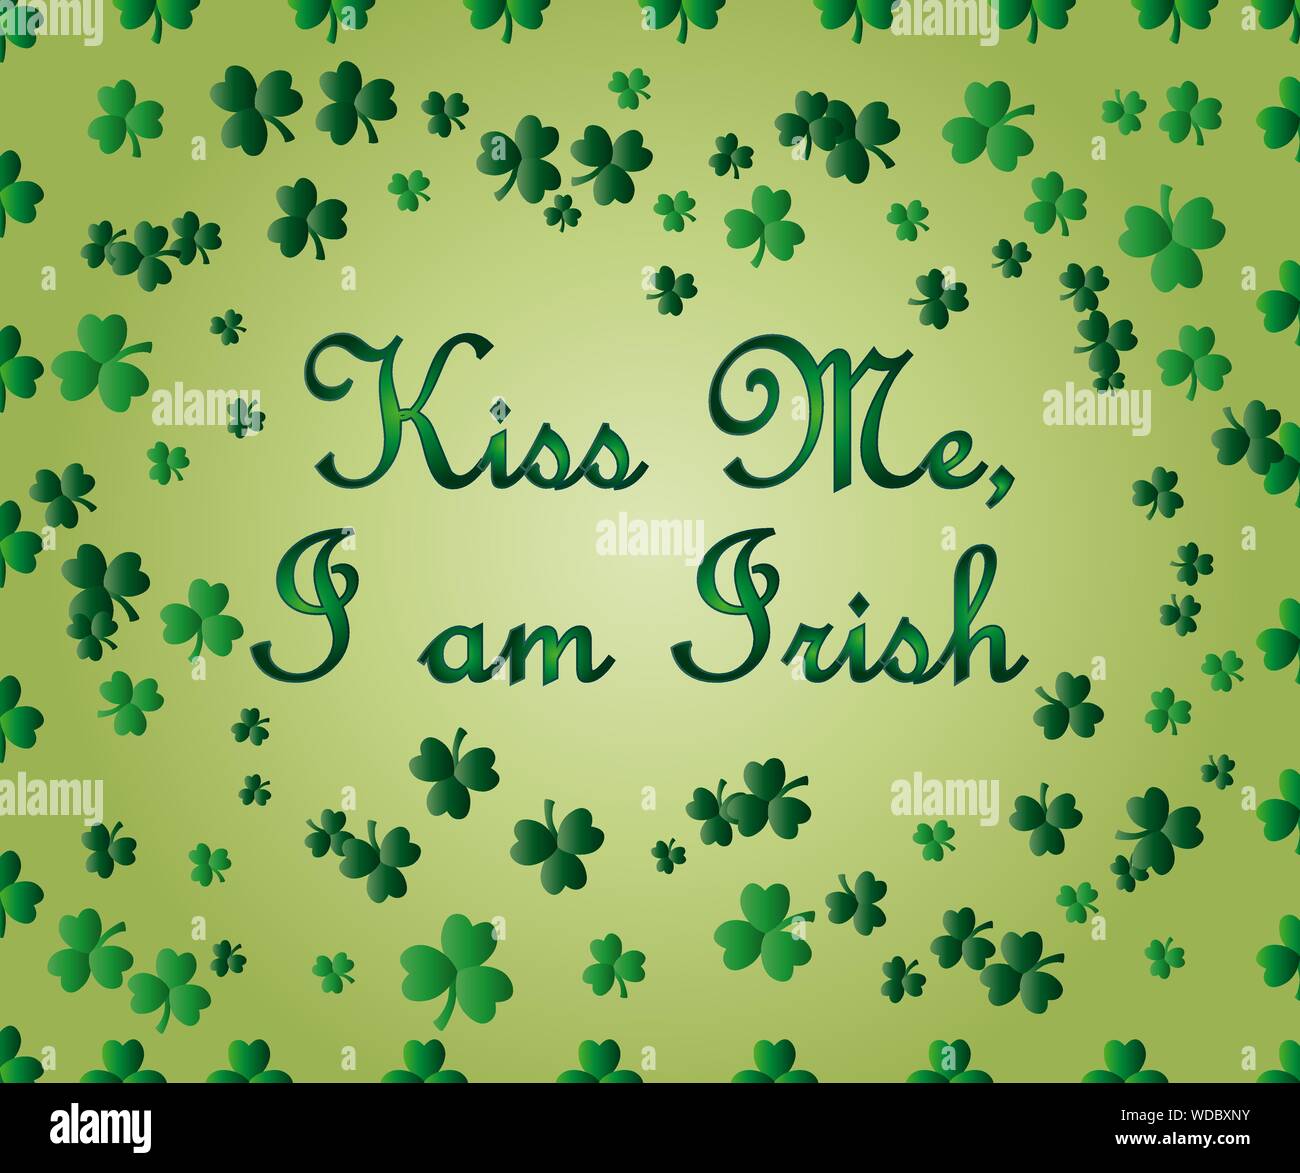 Saint Patrick's Day Greeting card avec les feuilles de trèfle vert étincelaient et texte. Inscription - embrasse-moi, je suis Irlandais Illustration de Vecteur